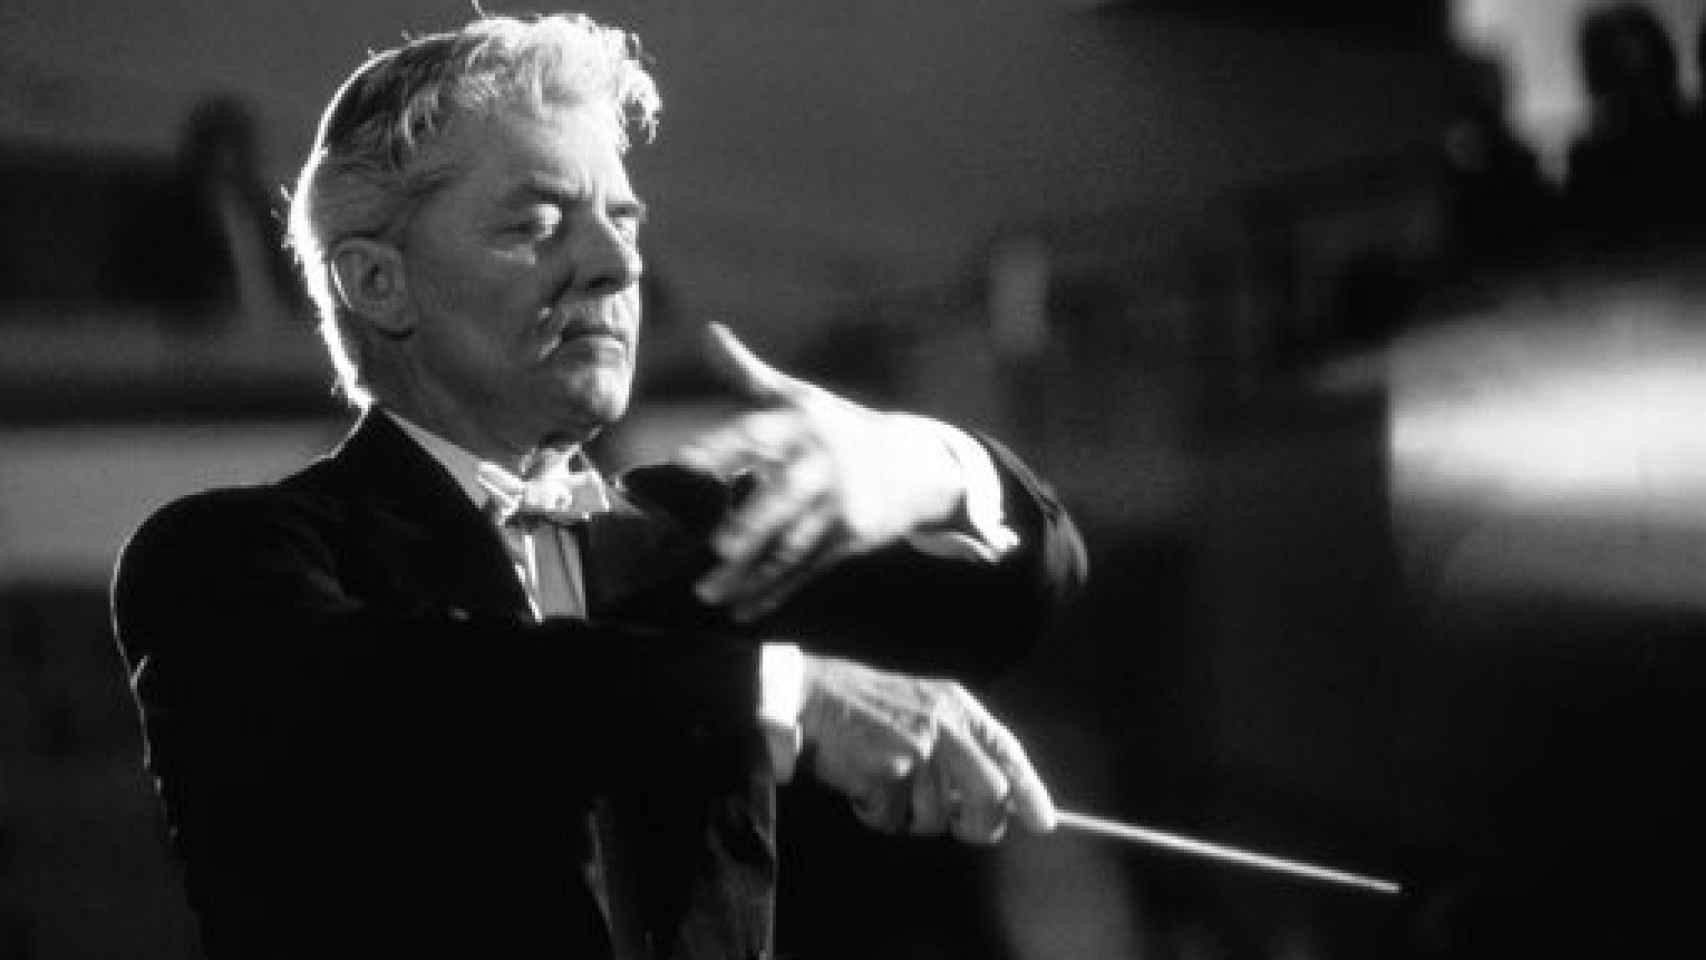 Image: Karajan, latido y pulsación